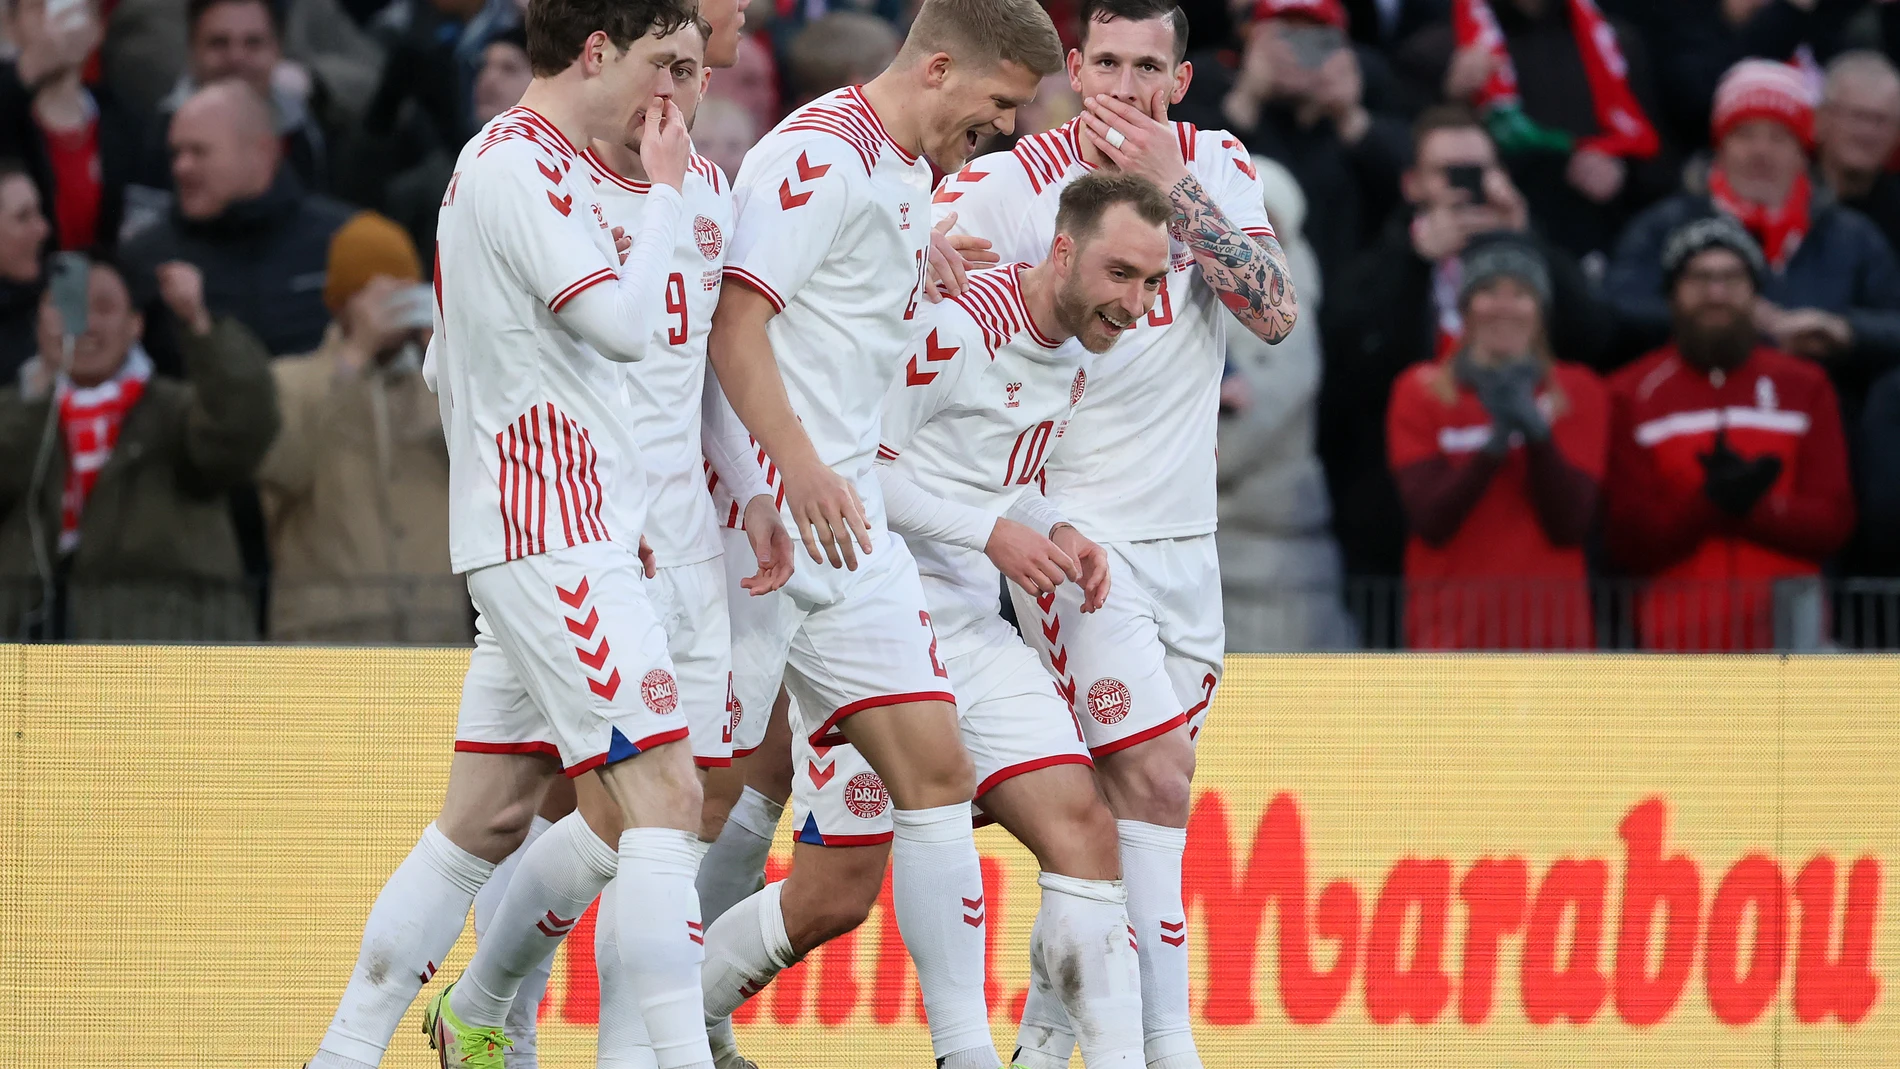 La selección de Dinamarca celebrando un gol